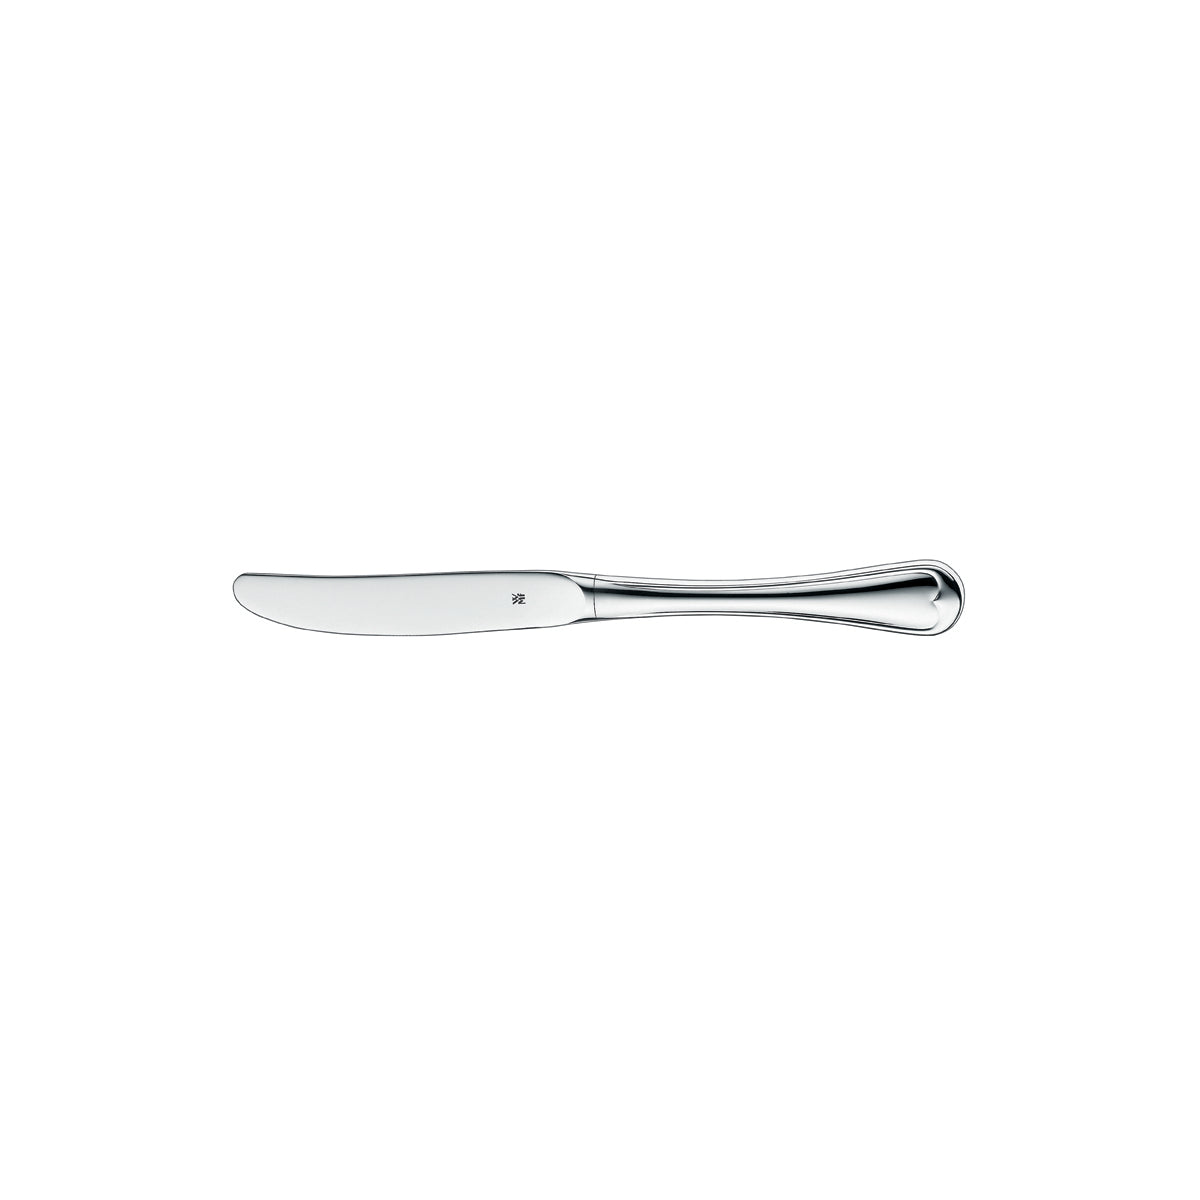 12.5403.6049 WMF Metropolitan Table Knife Stainless Steel Tomkin Australia Hospitality Supplies